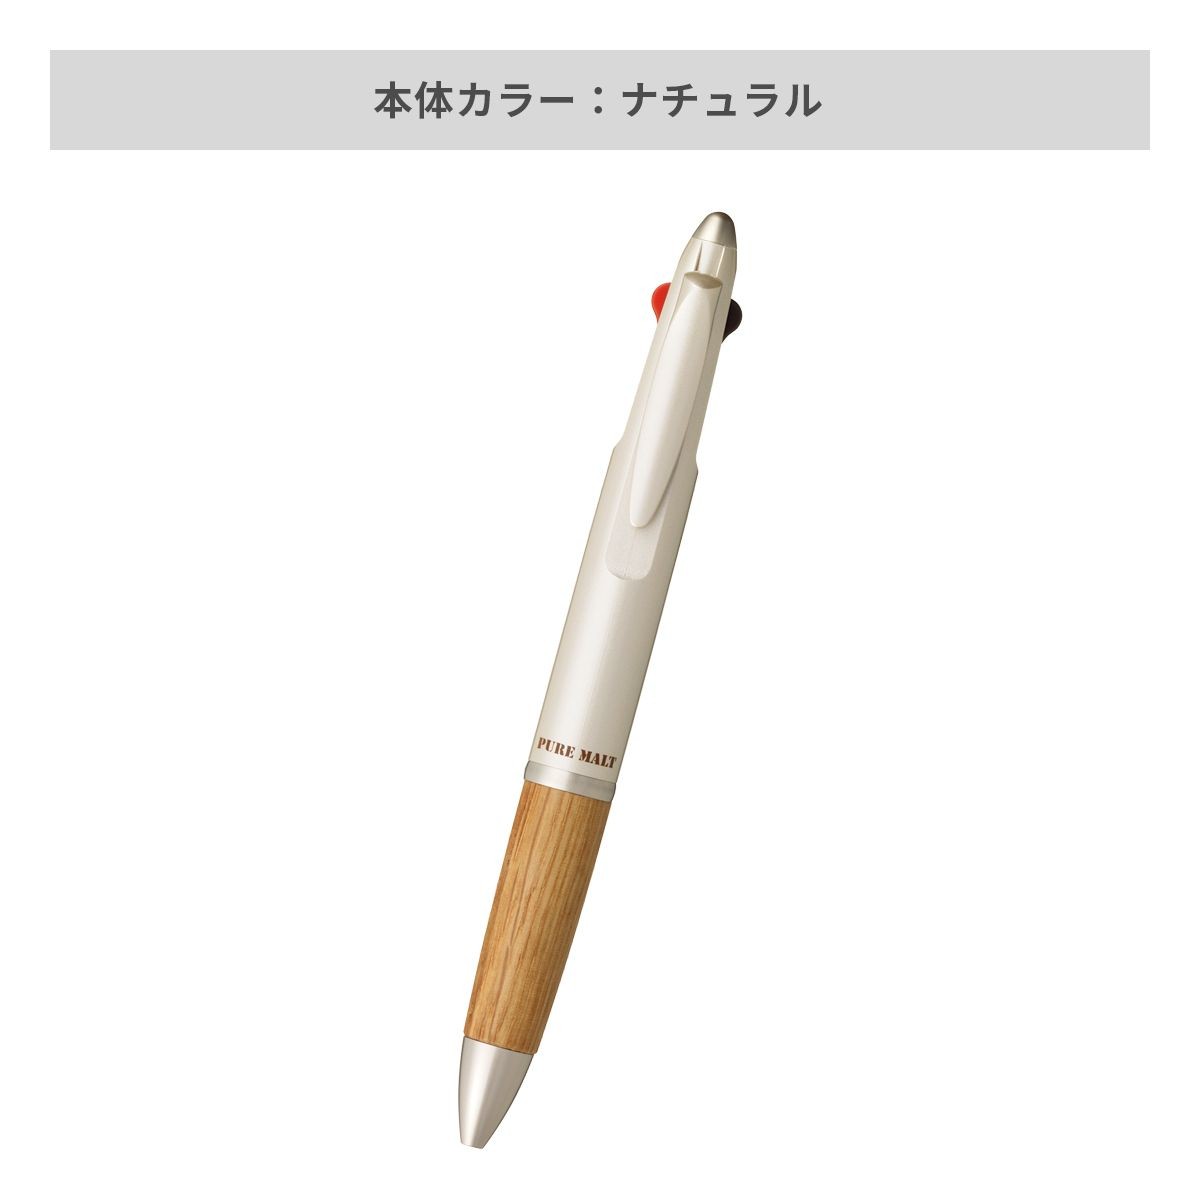 三菱鉛筆 ピュアモルト3機能ペン 0.7mm【多機能ペン / パッド印刷】 画像5